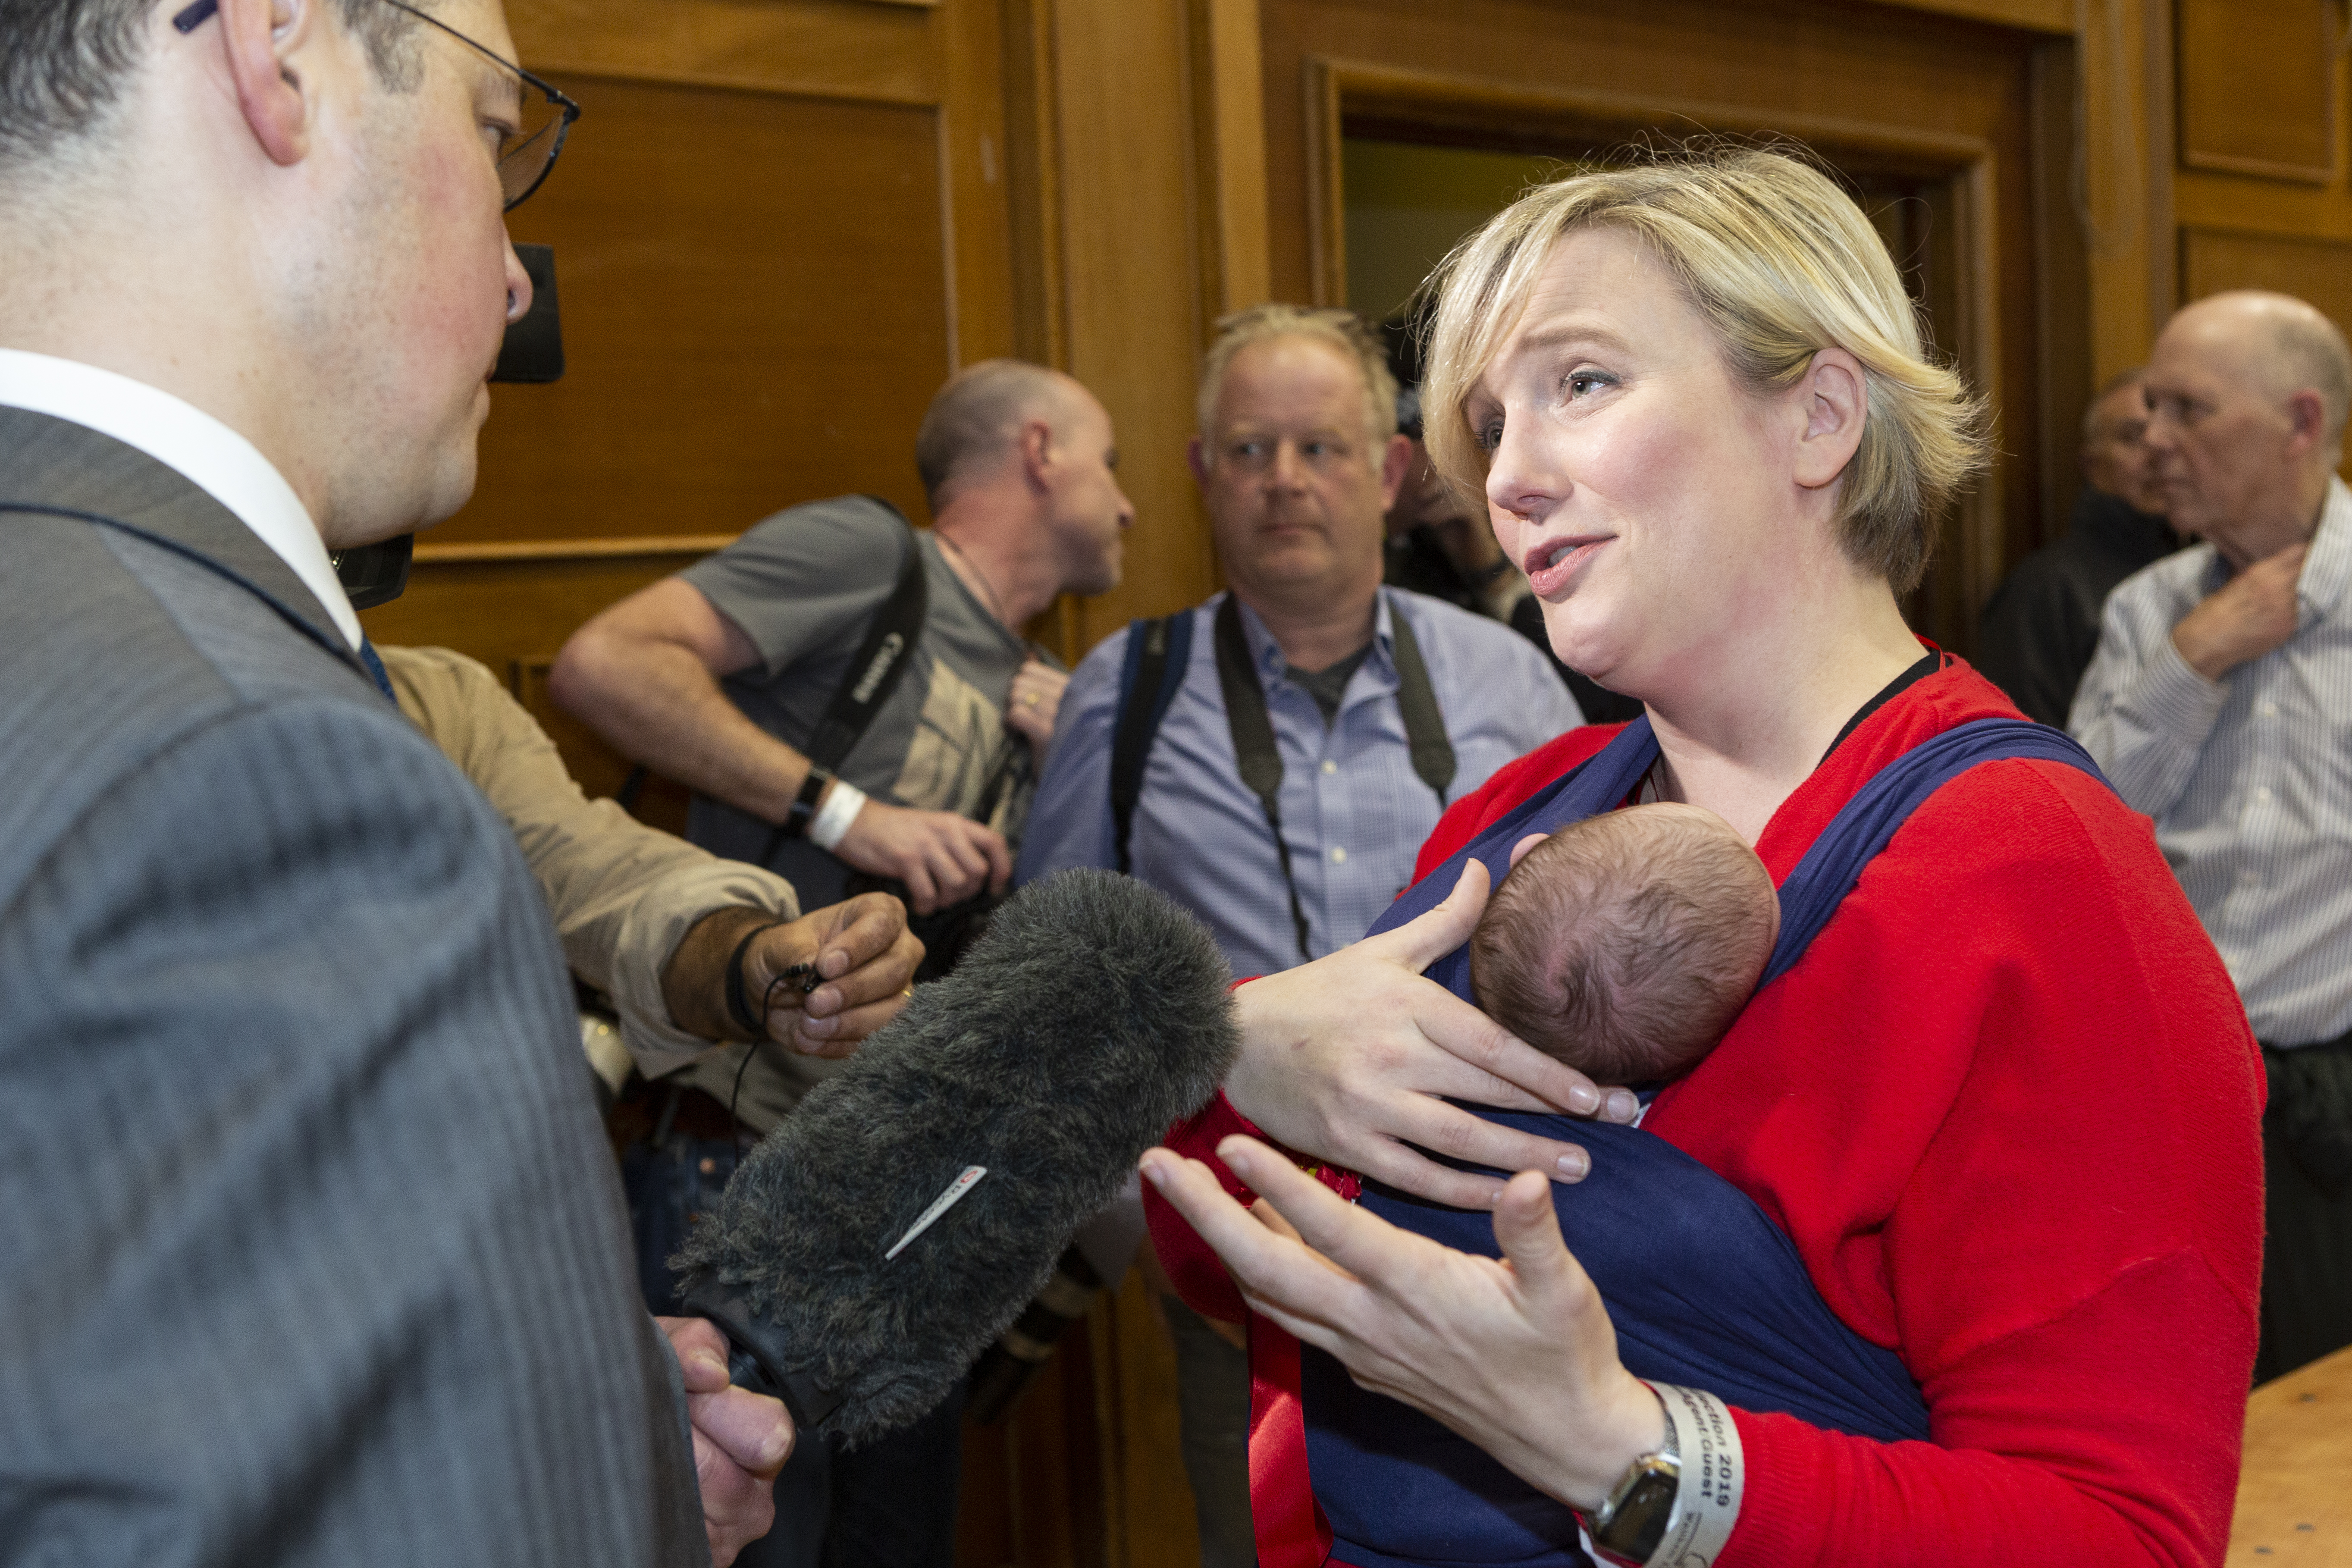 Gegen die Abgeordnete Stella Creasy, die bekanntermaßen ihr kleines Baby zur Arbeit mitbrachte, wurde ebenfalls von den Sozialbehörden ermittelt